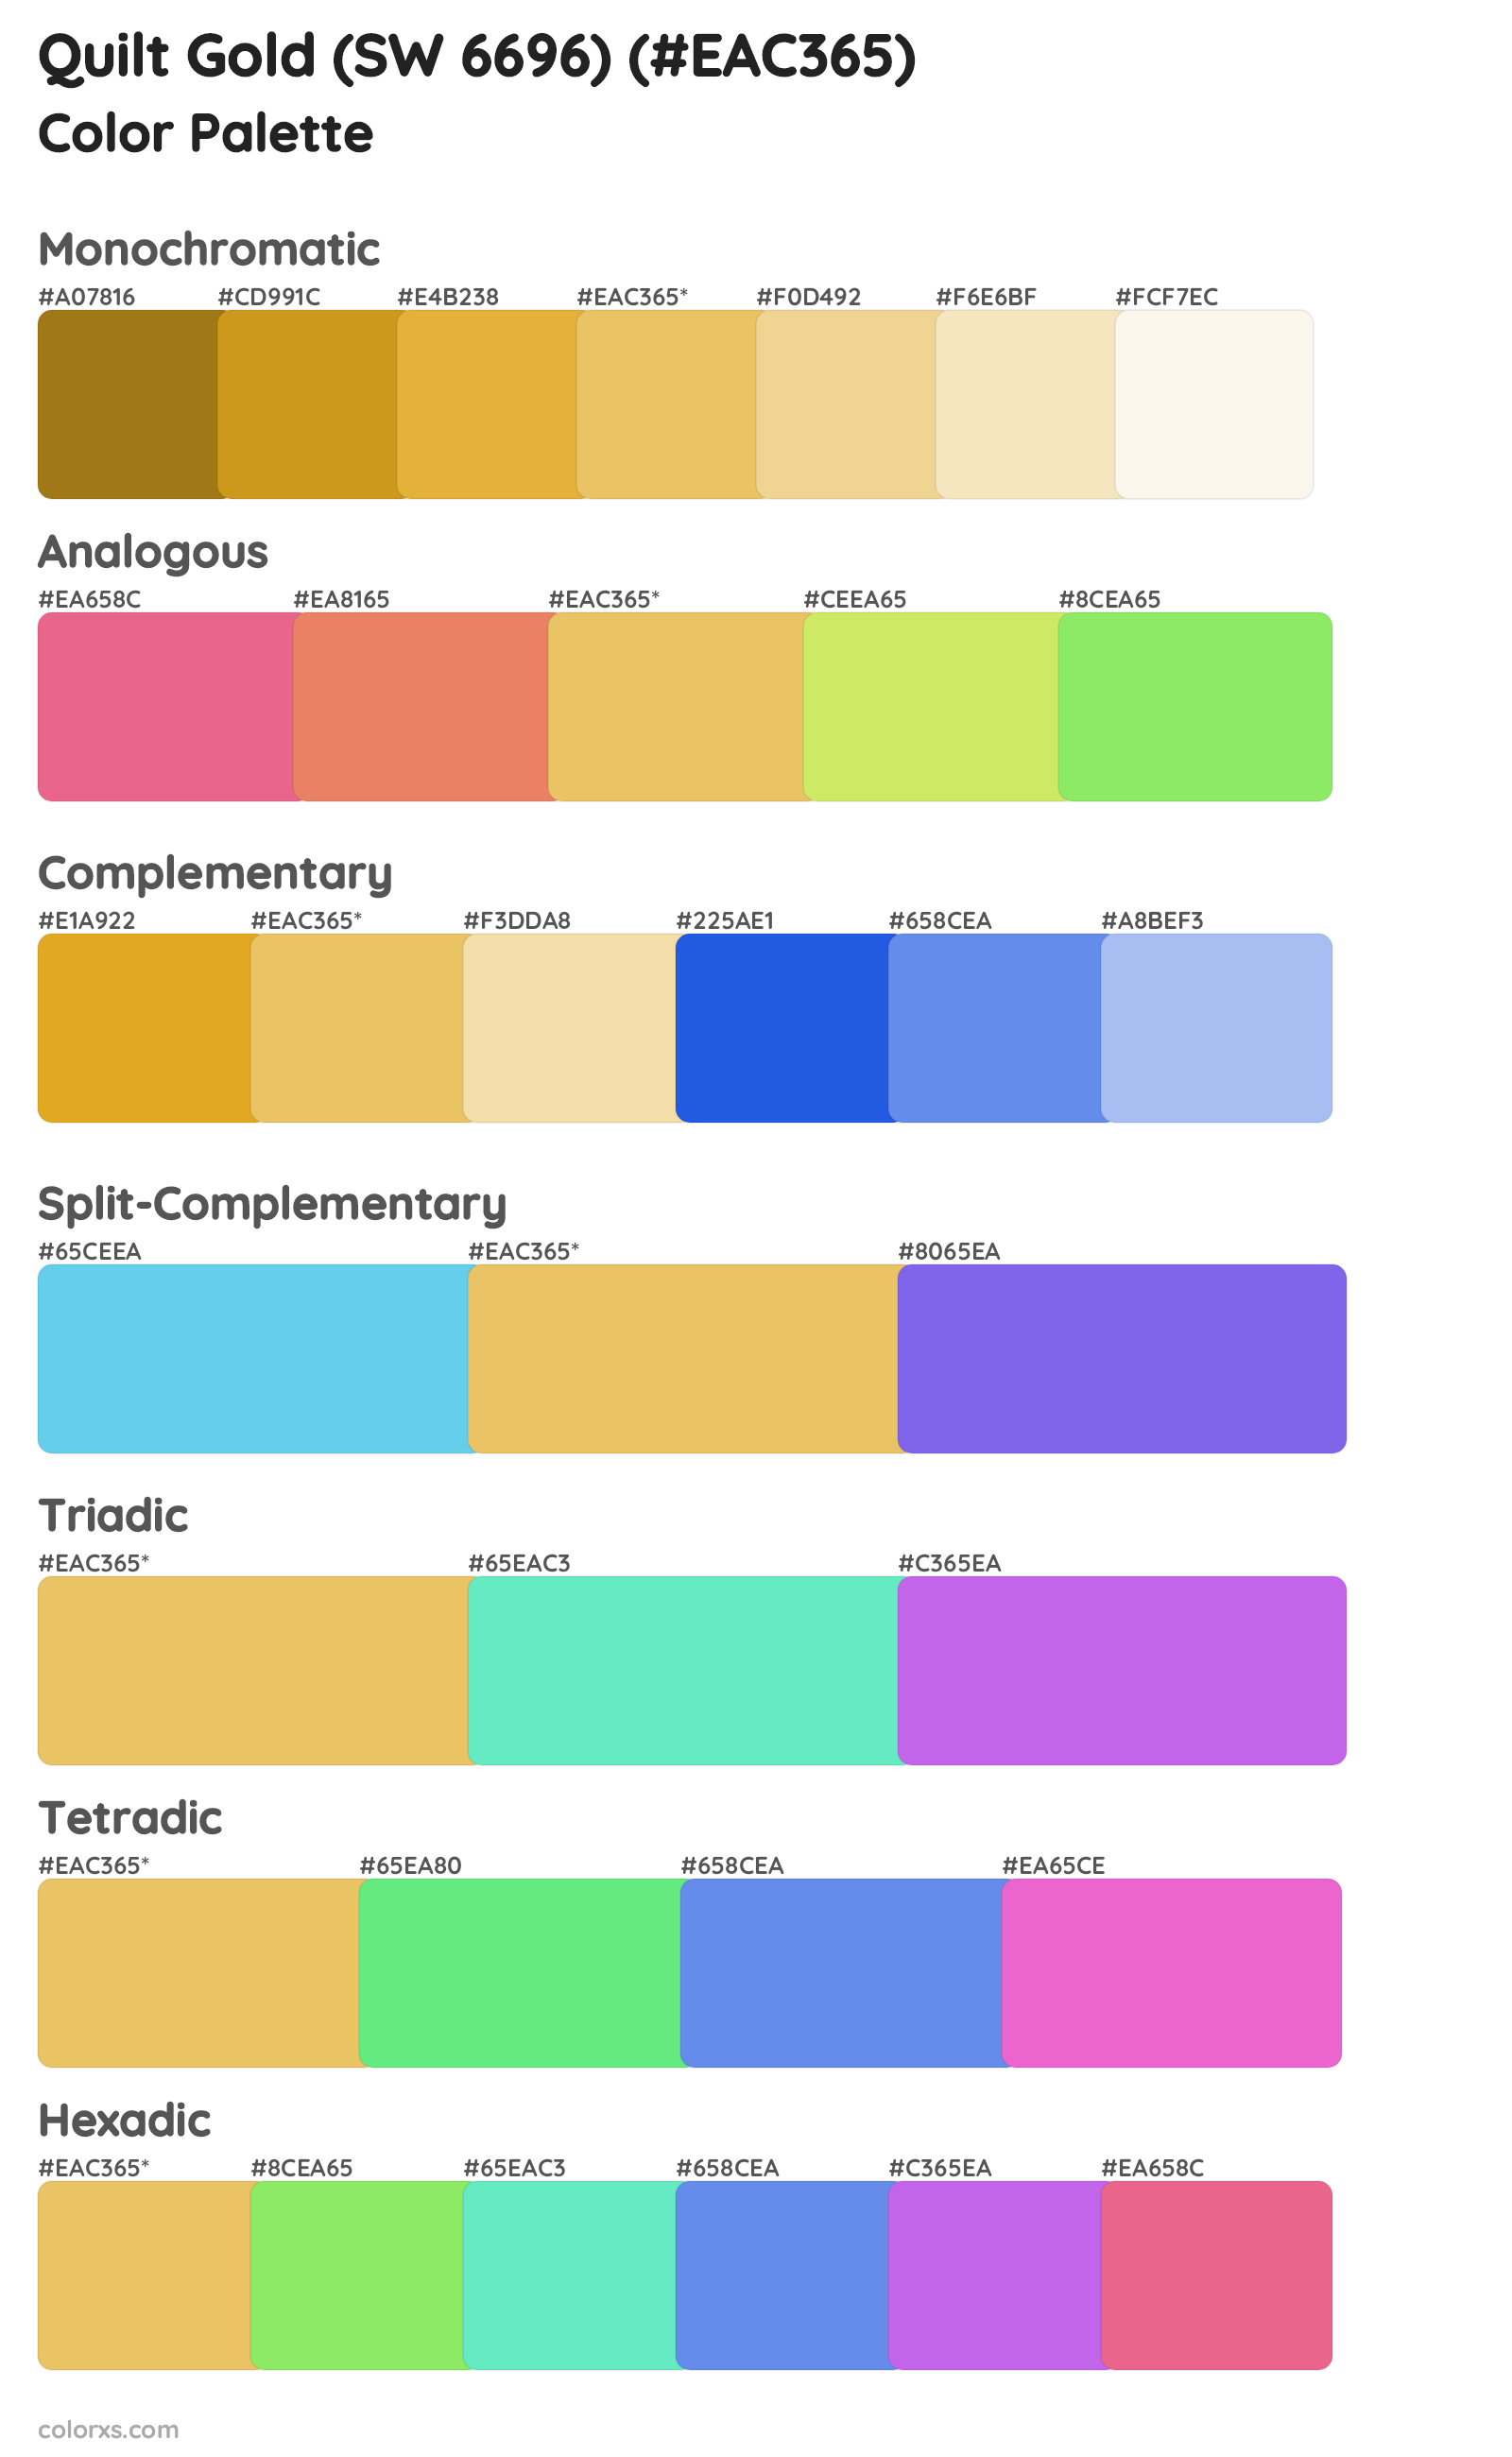 Quilt Gold (SW 6696) Color Scheme Palettes